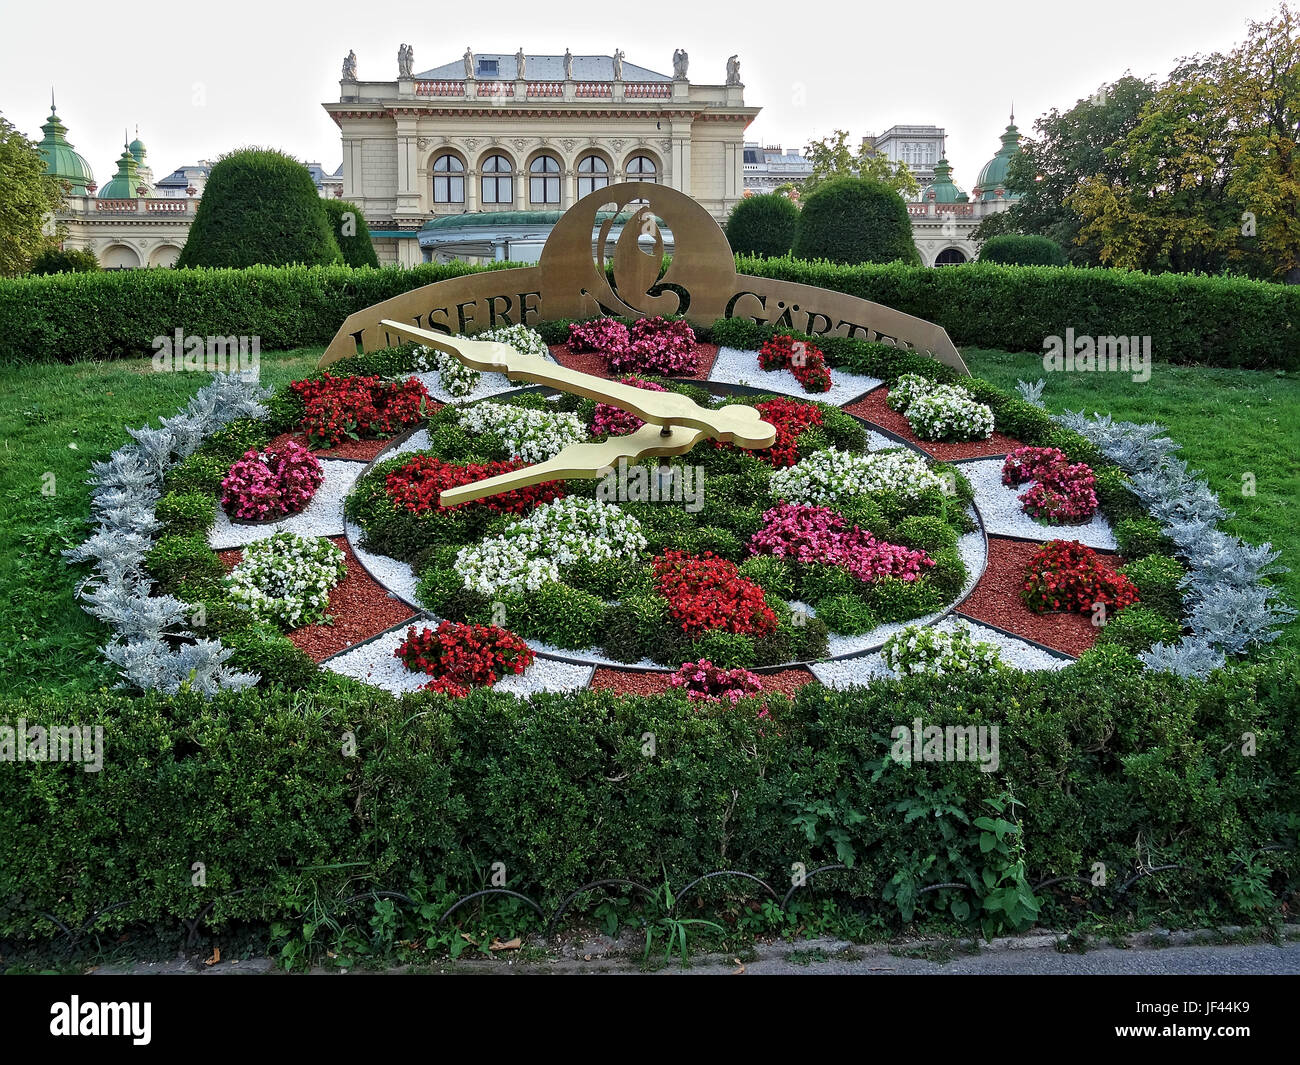 La colorazione dei fiori orologio in uno dei molteplici parchi della città di Vienna. Immagine presa a Vienna, in Austria, l'Europa. Anno 2015. Foto Stock